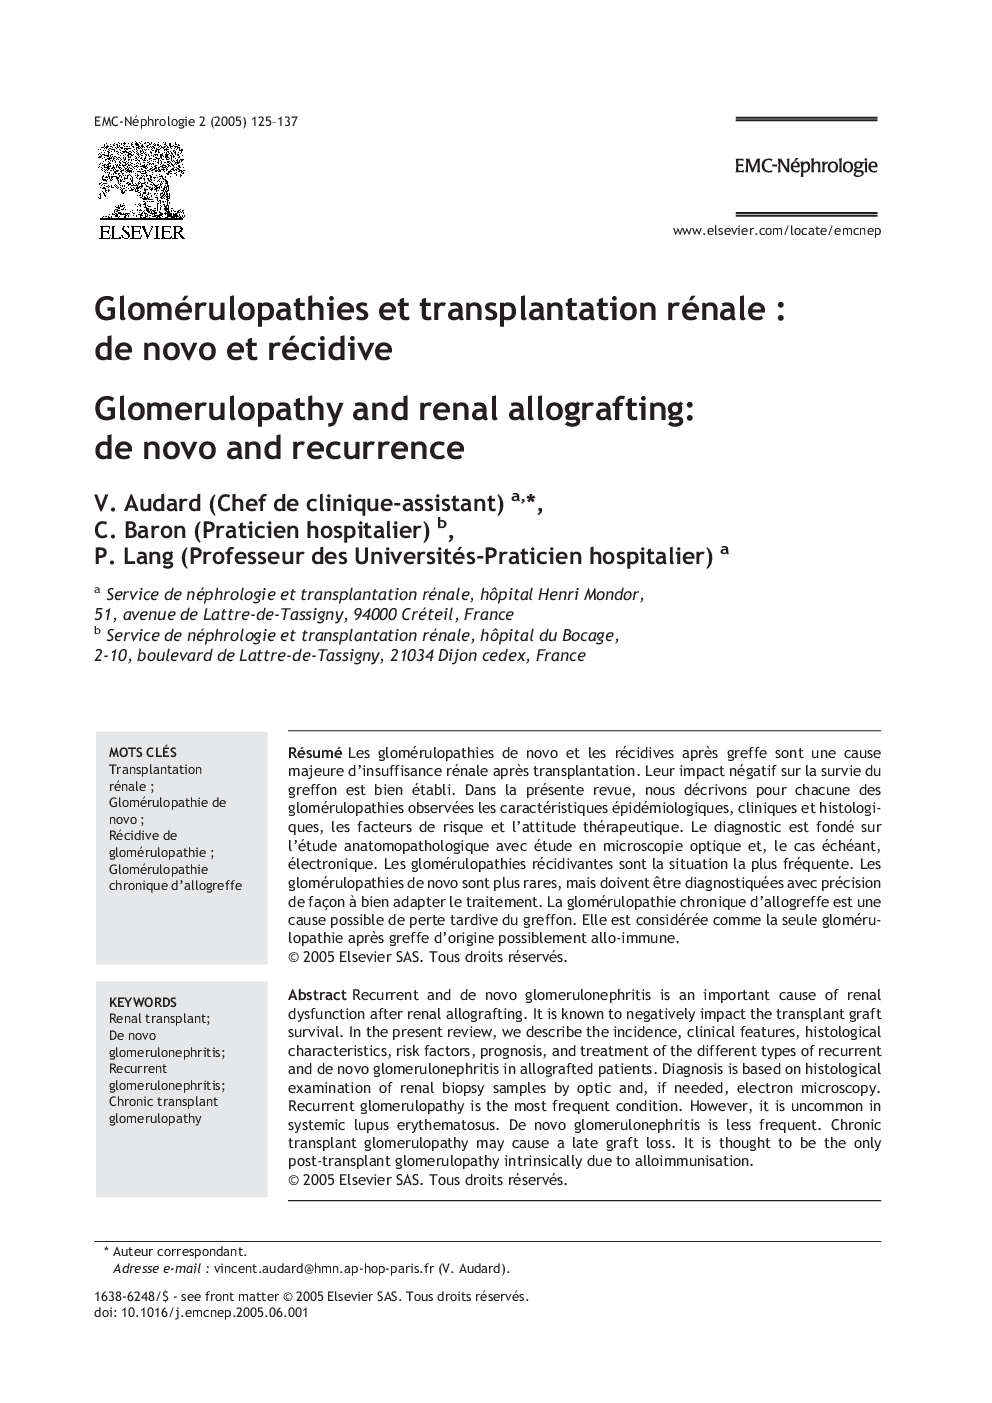 Glomérulopathies et transplantation rénaleÂ : de novo et récidive